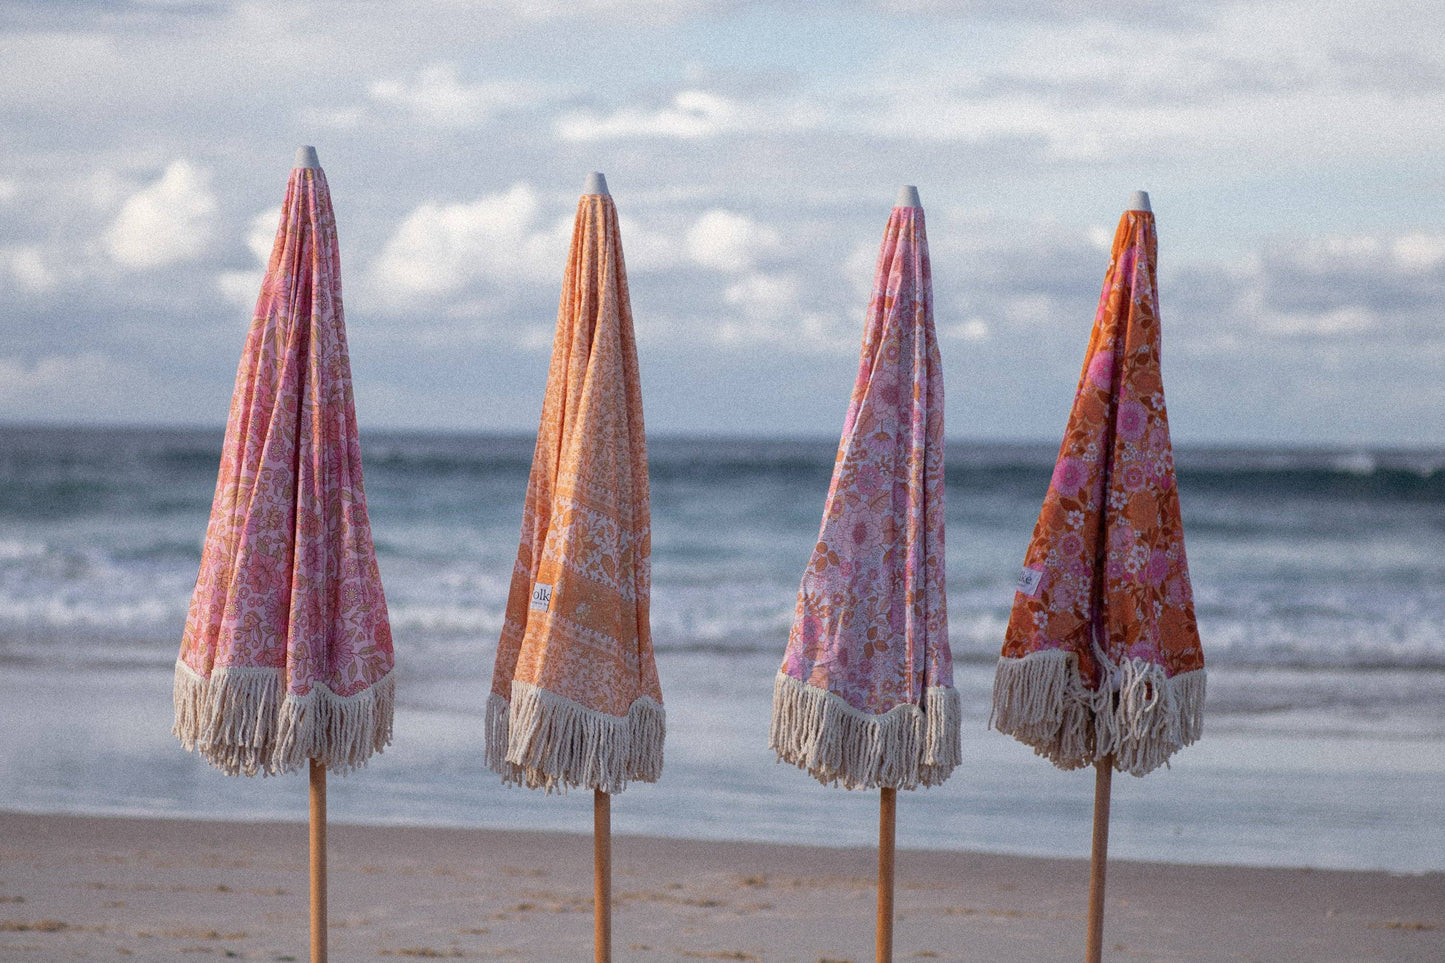 Beach Umbrella - Peony Daze